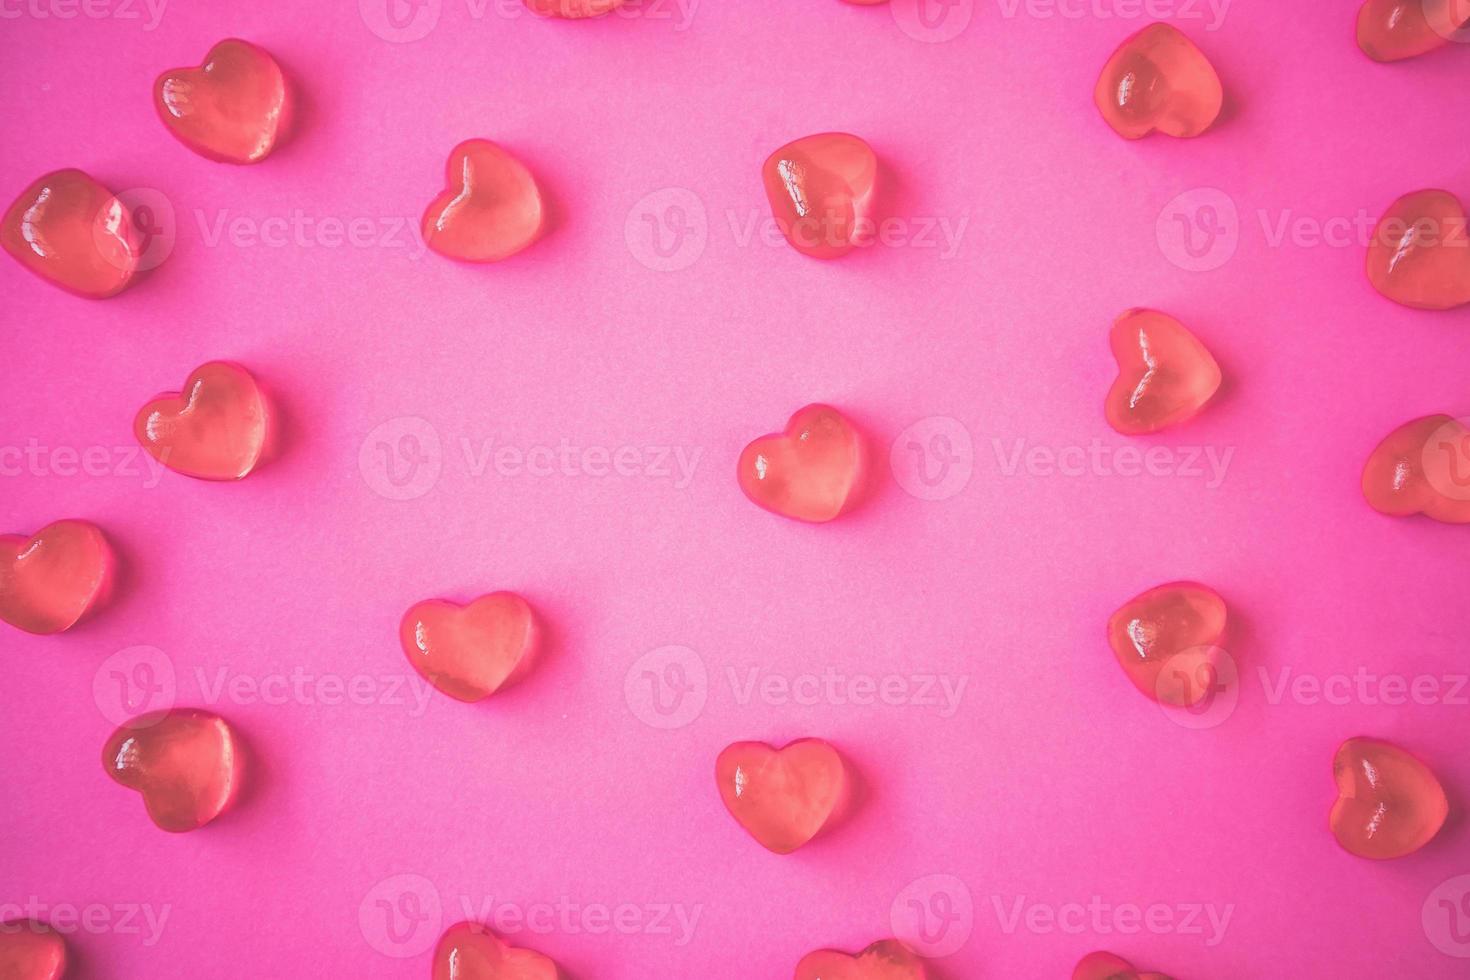 fundo de dia dos namorados com doces de forma de coração no fundo rosa foto